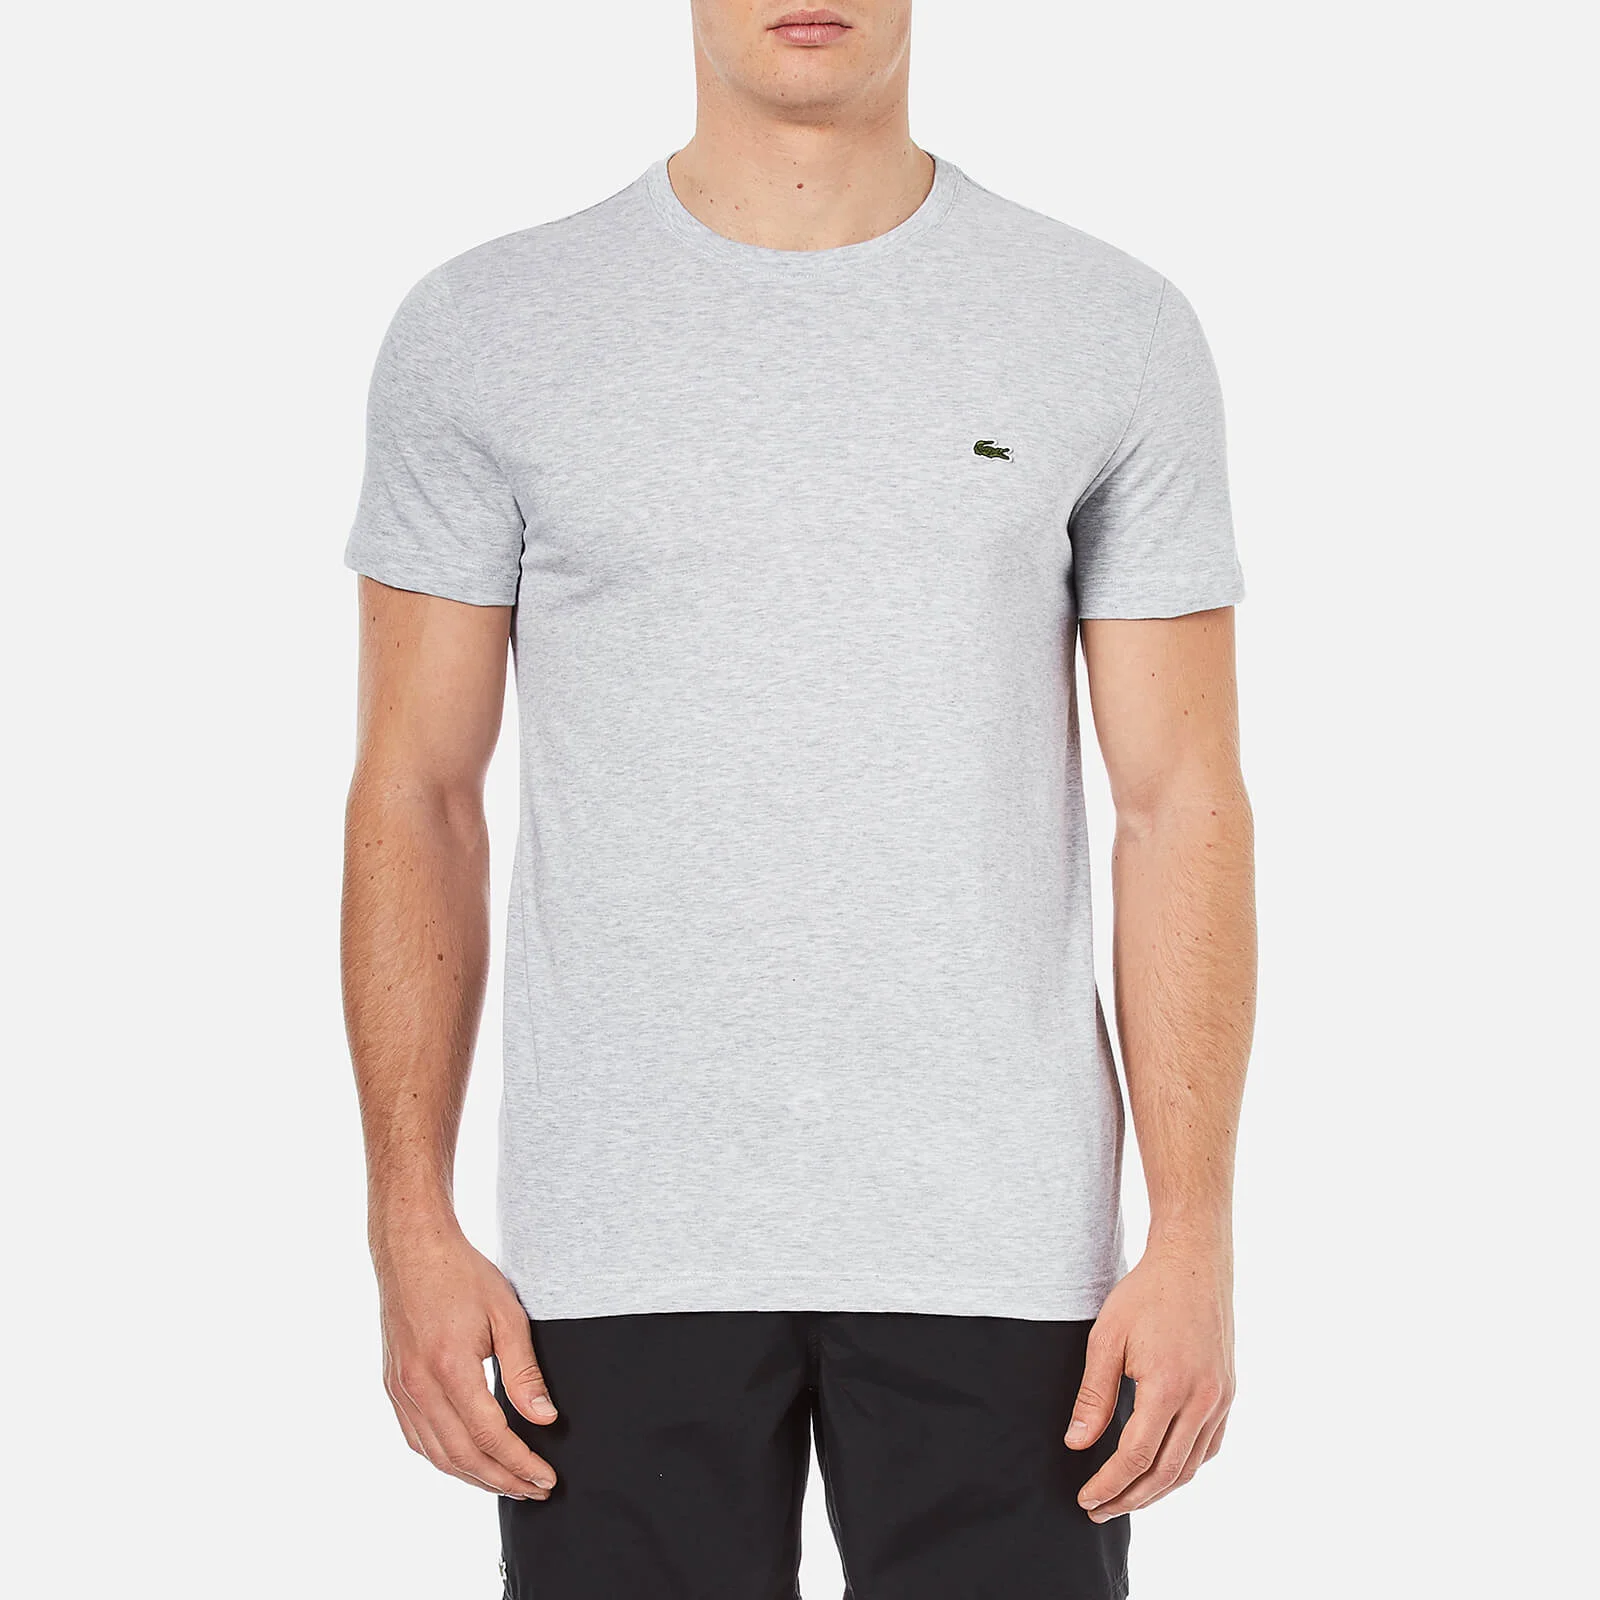 Lacoste Men's Cotton Crewneck T-Shirt - Silver Chine Image 1